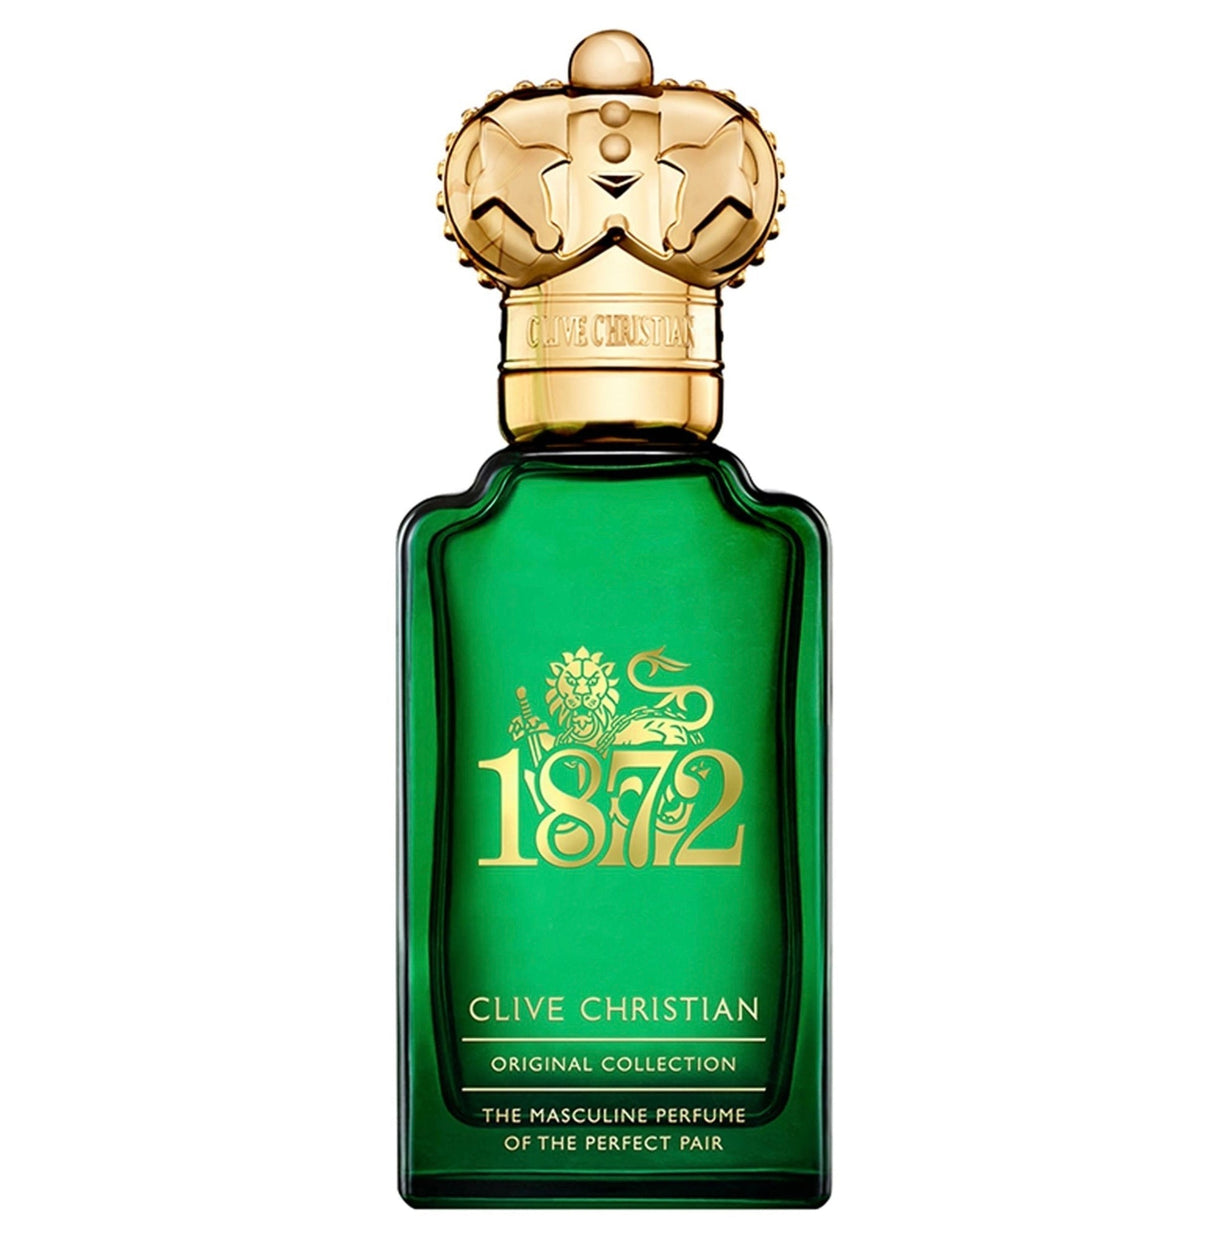 Clive Christian 1872 Masculine Eau De Parfum